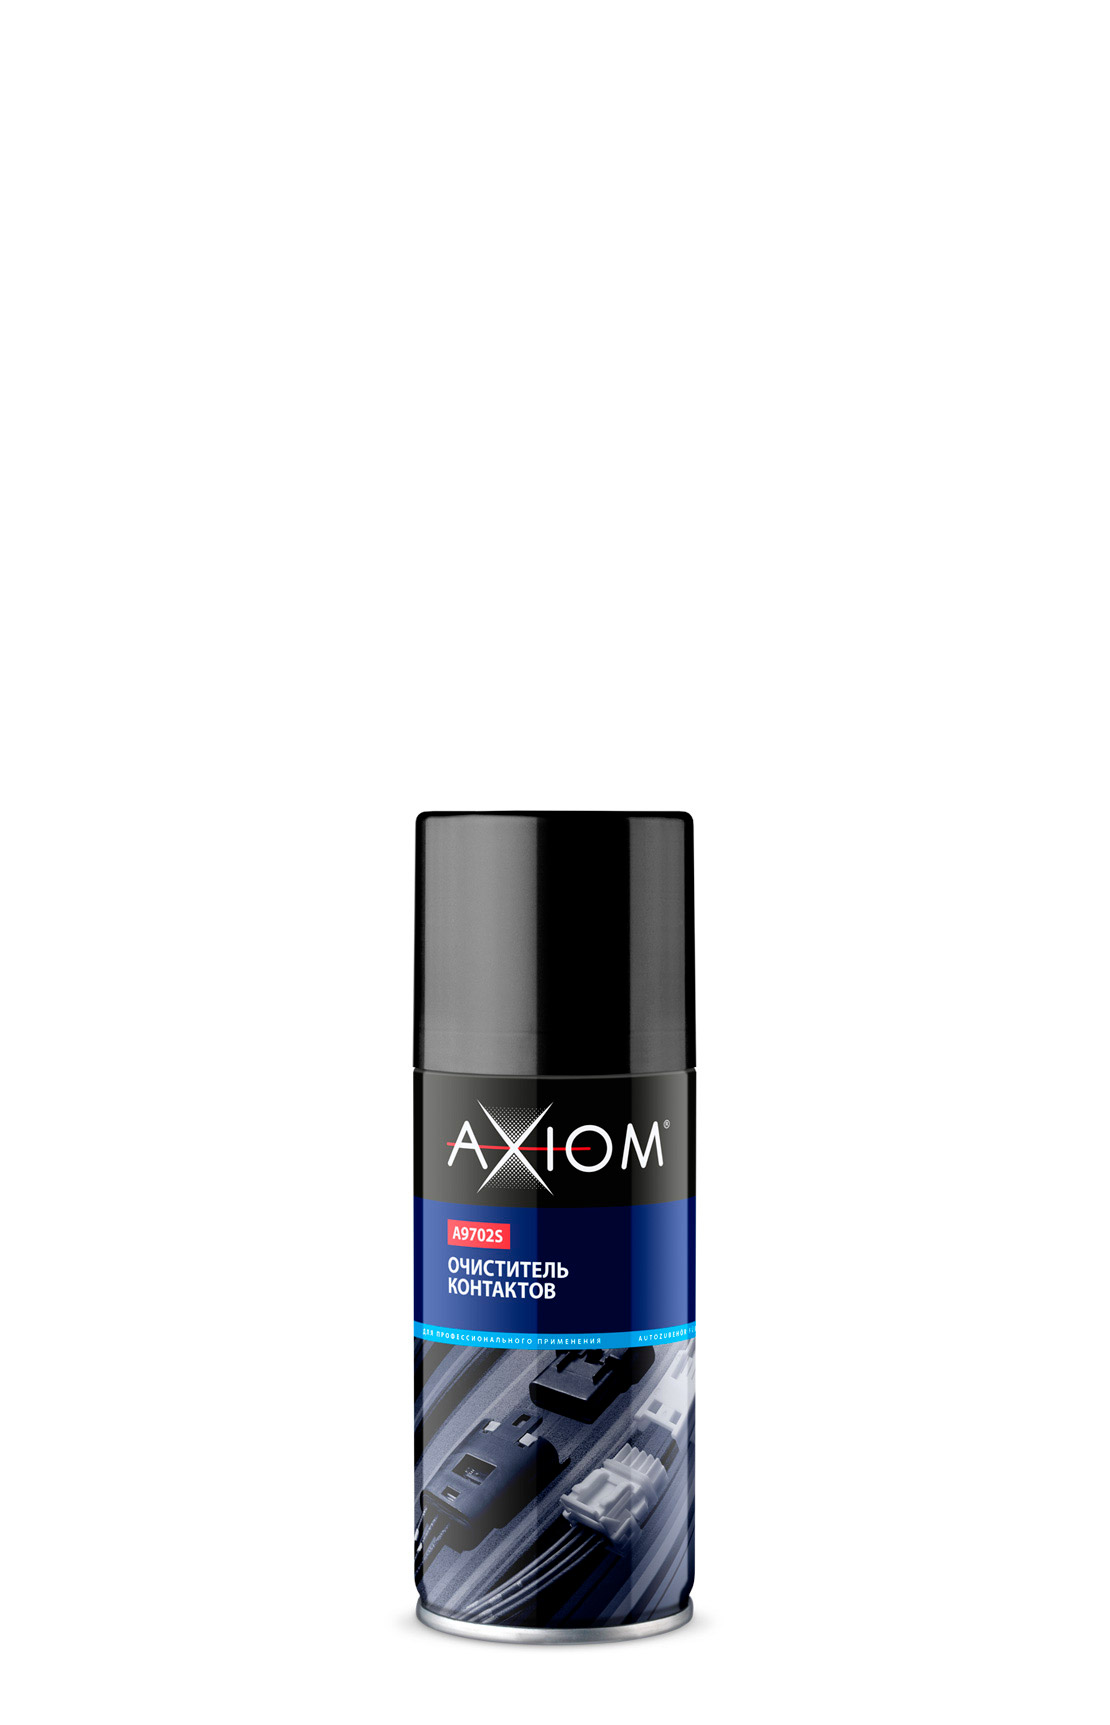 Очиститель контактов AXIOM,140мл.